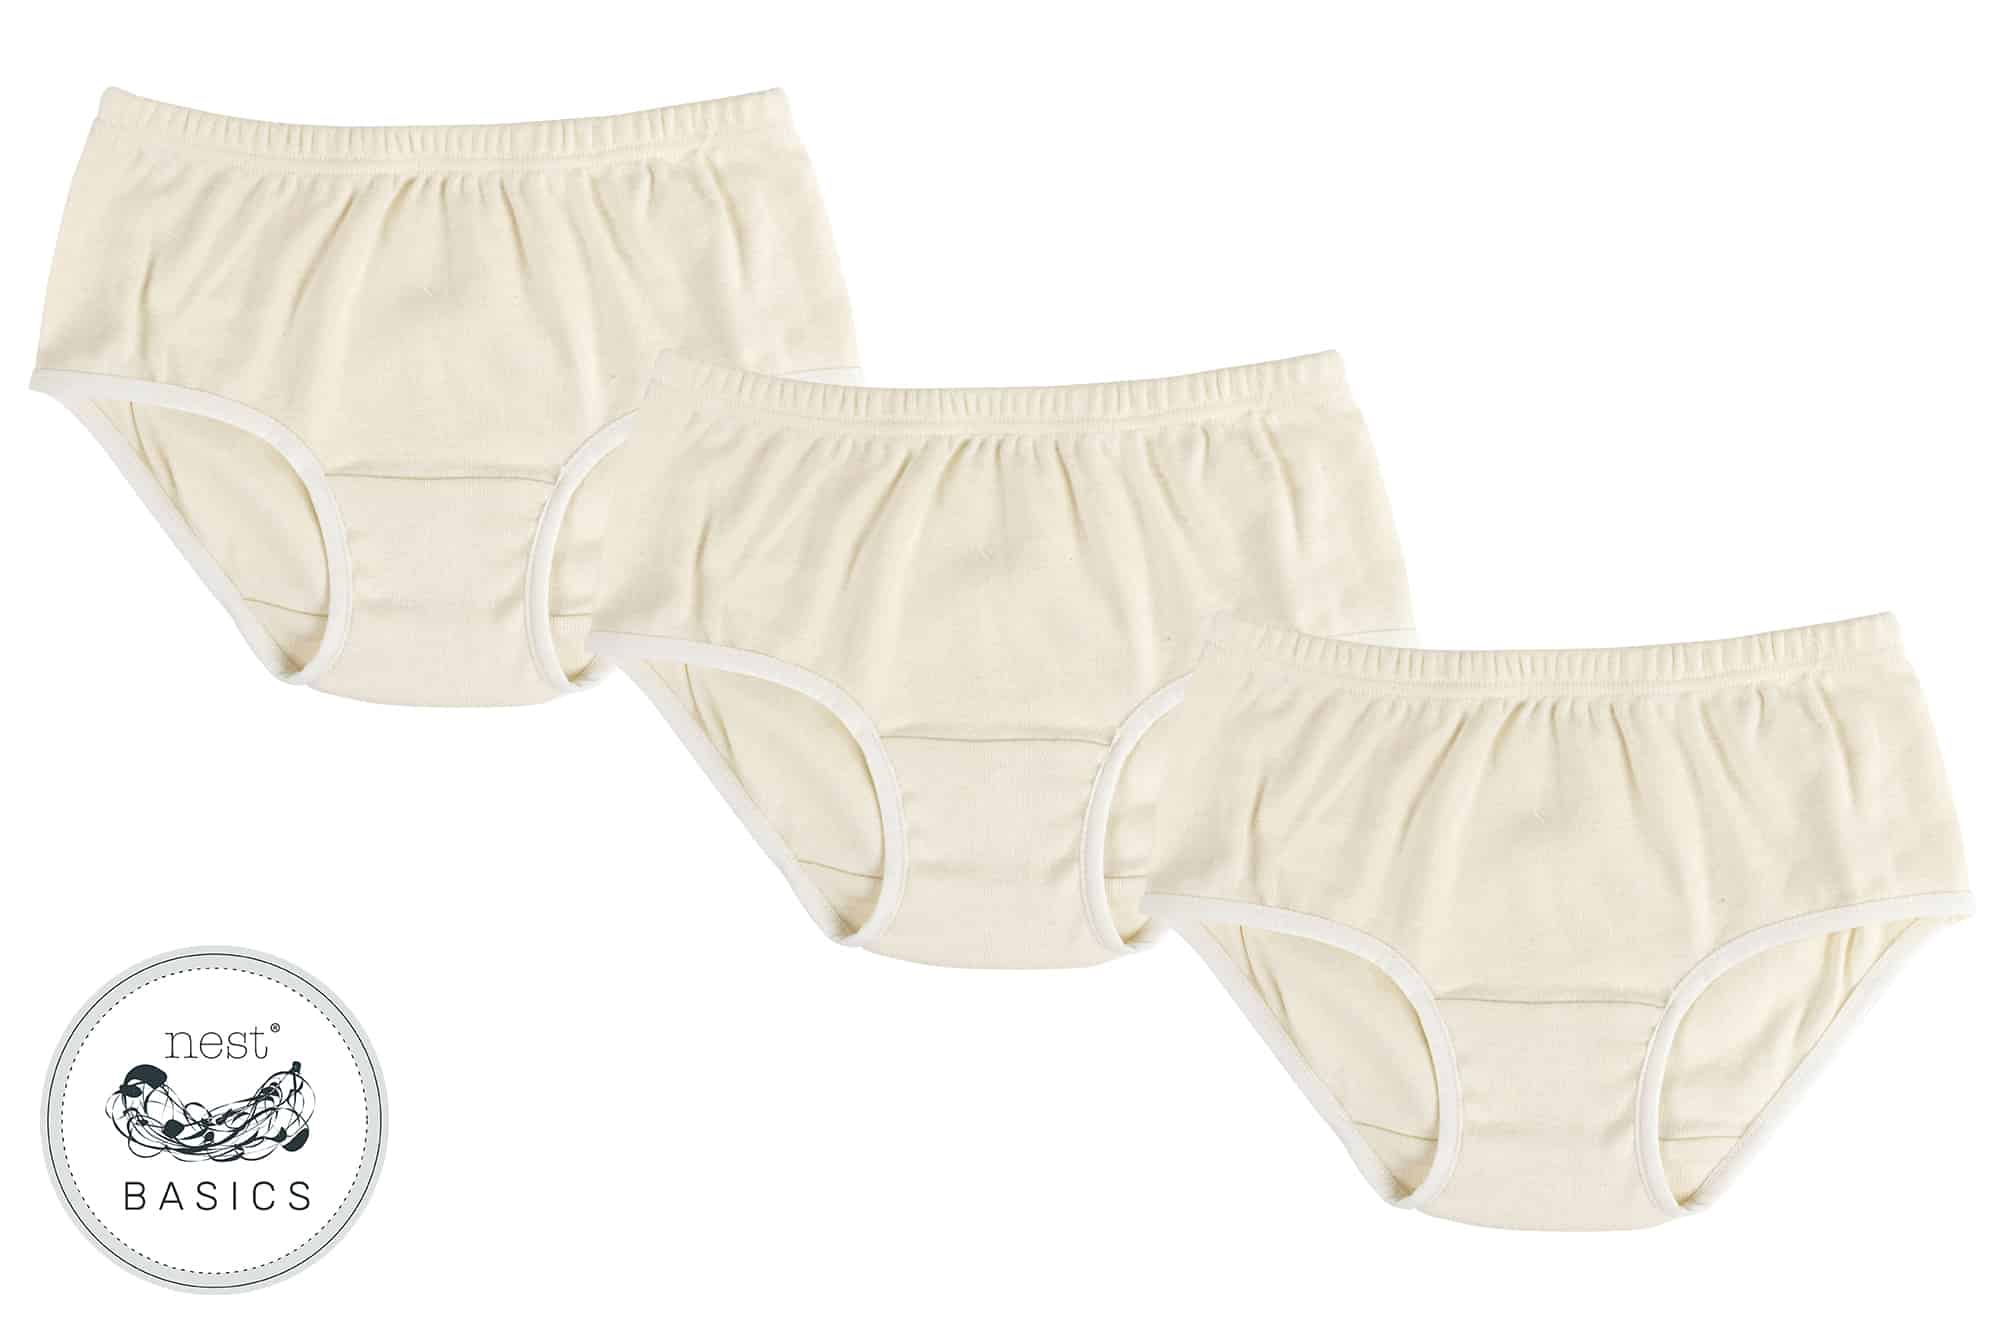 Buy Girls' Full Brief Underwear Online